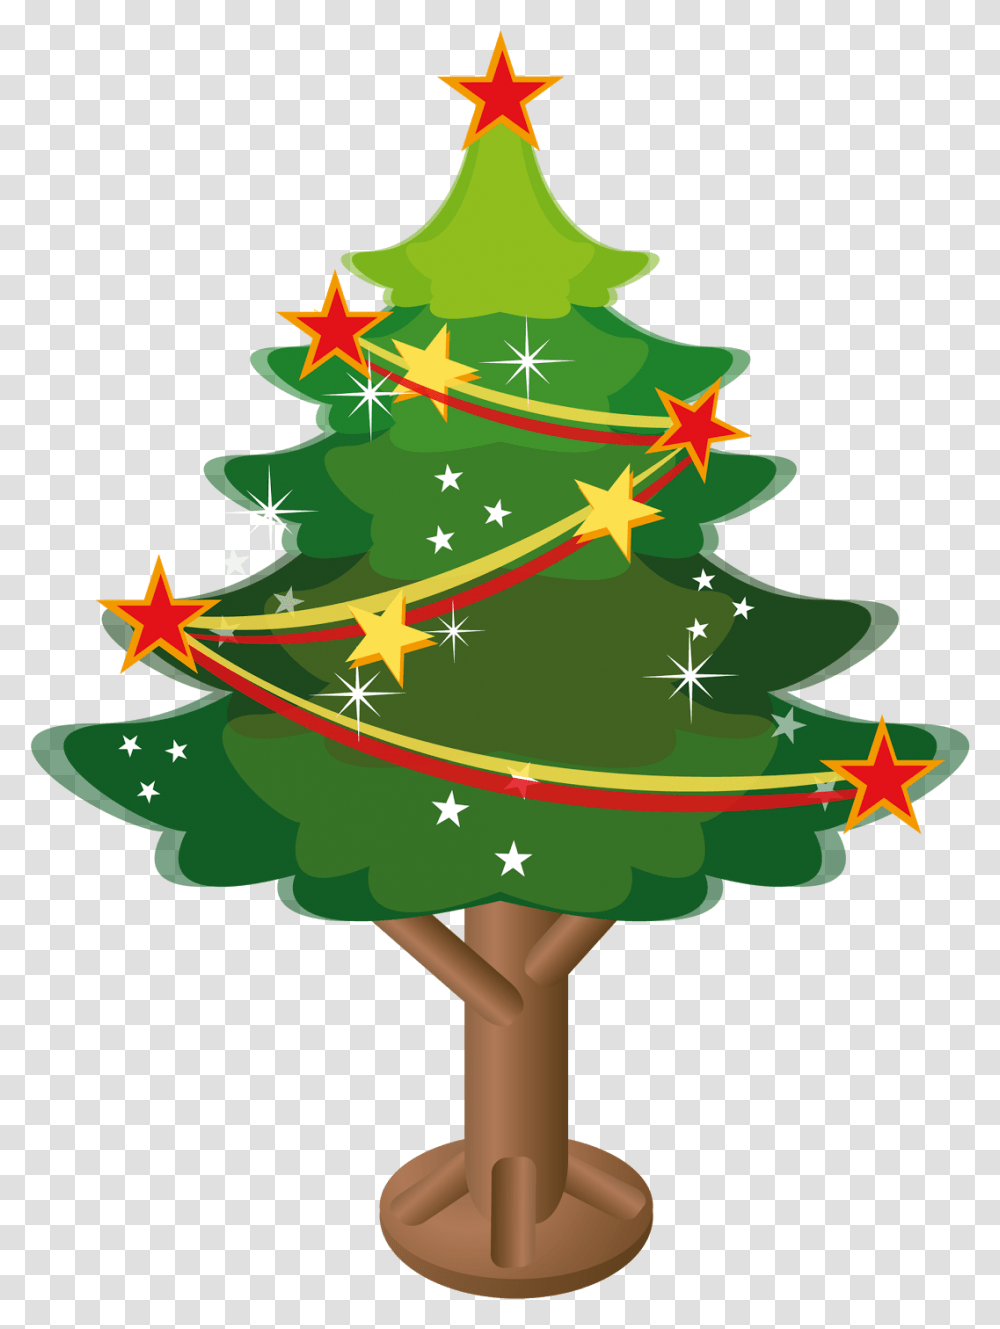 Arbol De Navidad Vector Happy New Year 2012 Quotes, Tree, Plant, Ornament, Star Symbol Transparent Png